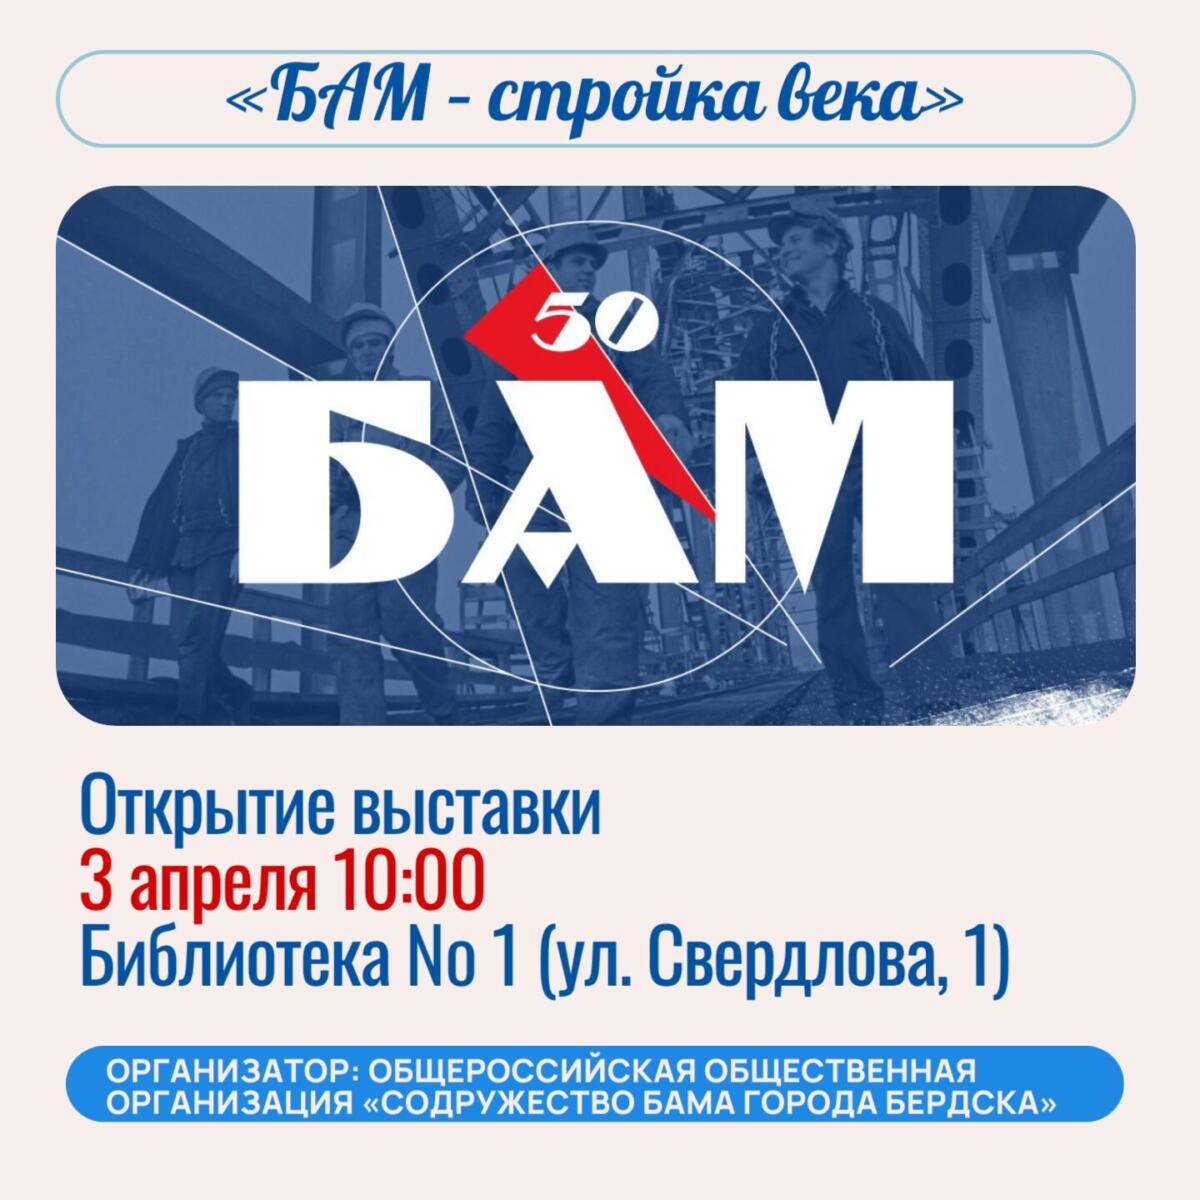 Бердчан пригласили на выставку «БАМ – стройка века»